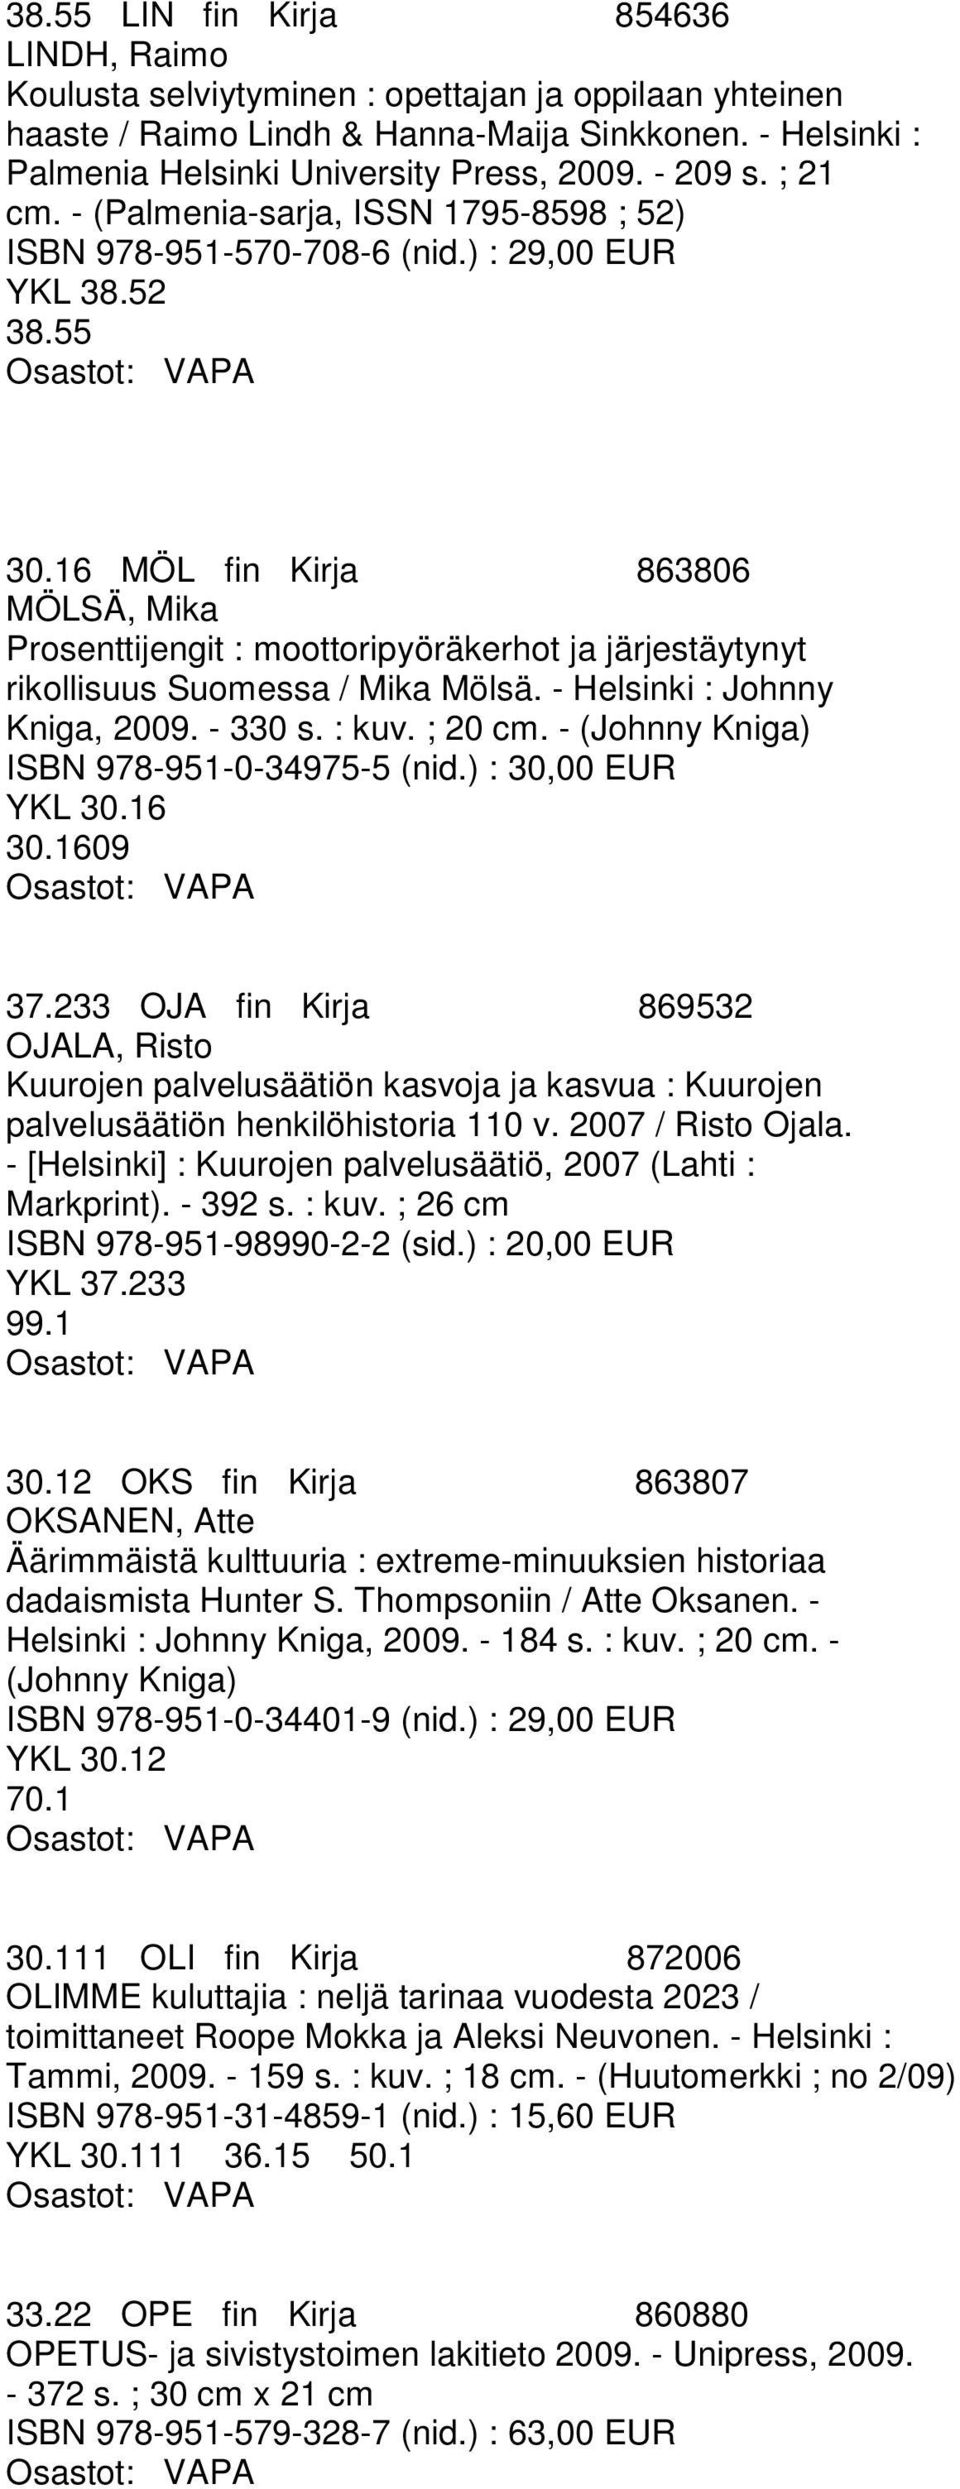 16 MÖL fin Kirja 863806 MÖLSÄ, Mika Prosenttijengit : moottoripyöräkerhot ja järjestäytynyt rikollisuus Suomessa / Mika Mölsä. - Helsinki : Johnny Kniga, 2009. - 330 s. : kuv. ; 20 cm.